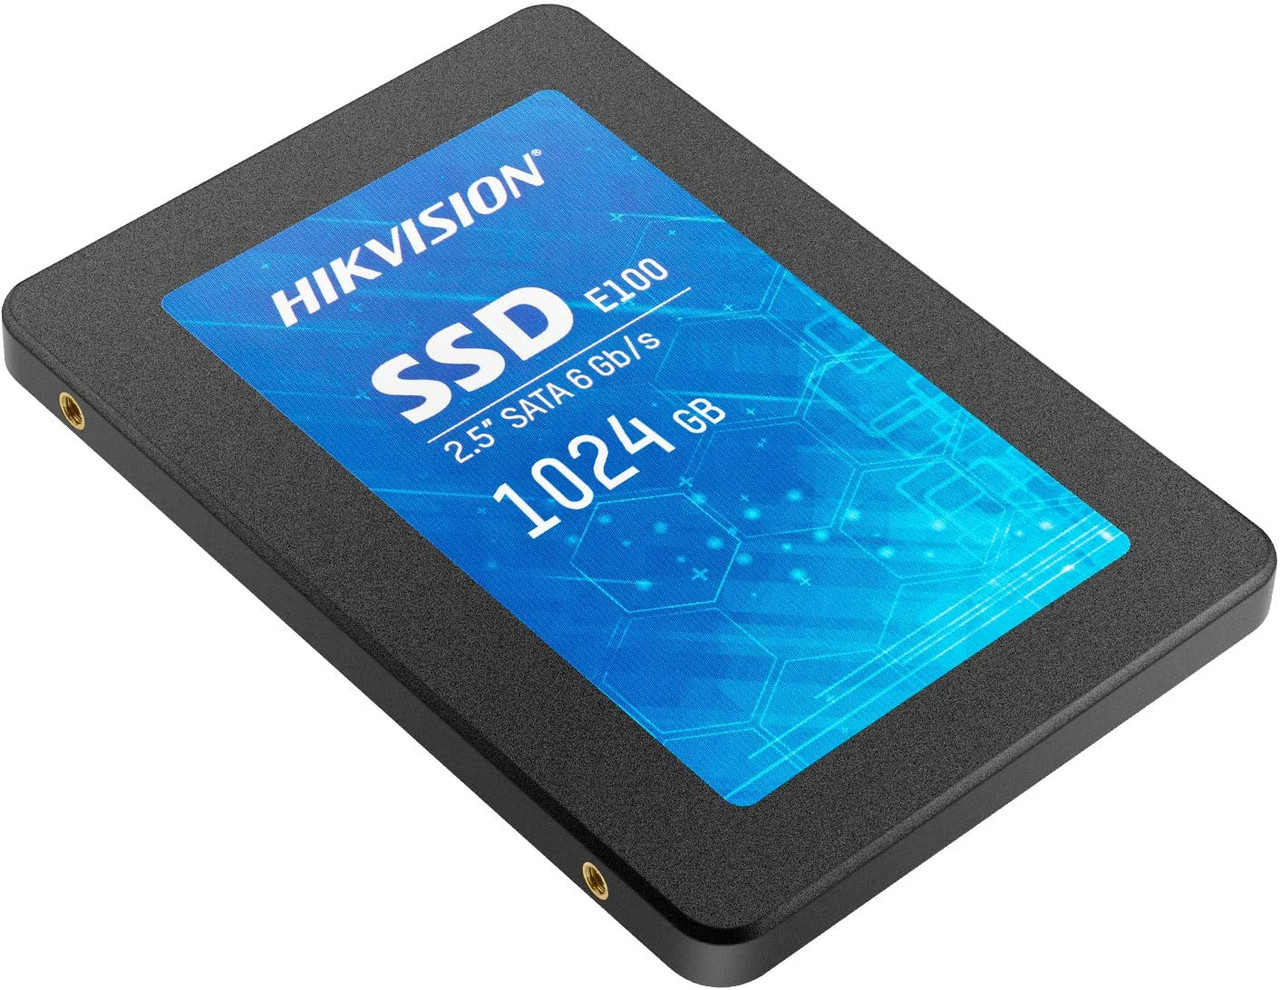 HIKSEMI Intelligent Storage 2.5 SATA 512GB - HS-SSD-E100/512G - TechShopNG